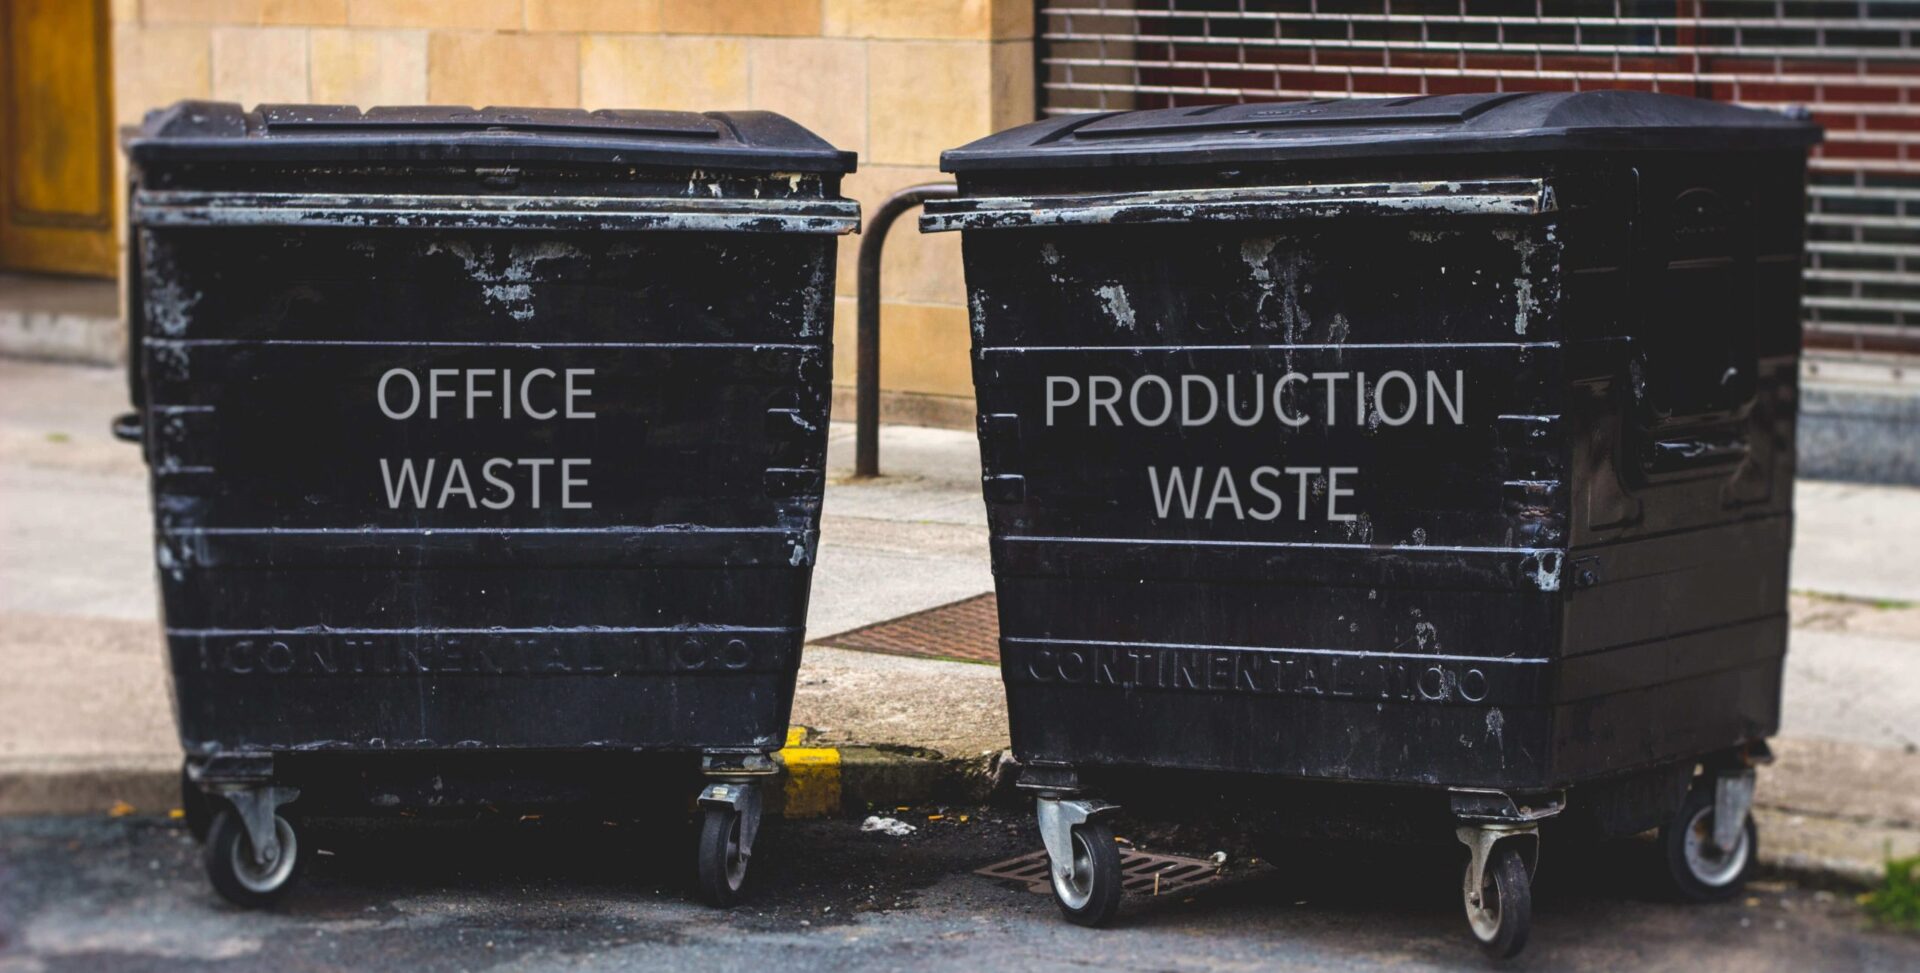 dva velke odpadkove kose s napisom OFFICE WASTE a Production Waste